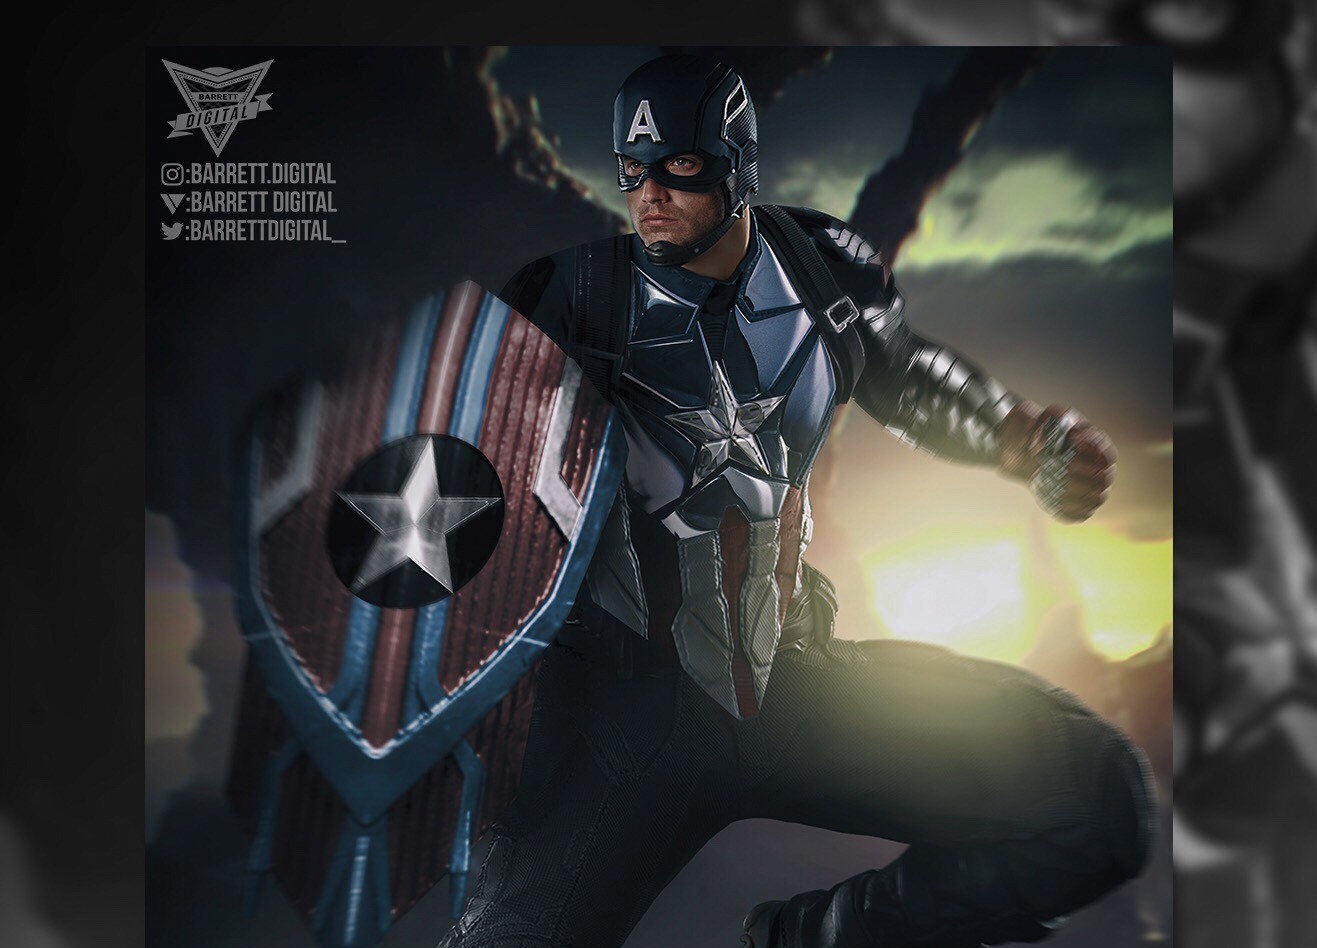 A fan art of Bucky Barnes Captain America created by Daton Barrett